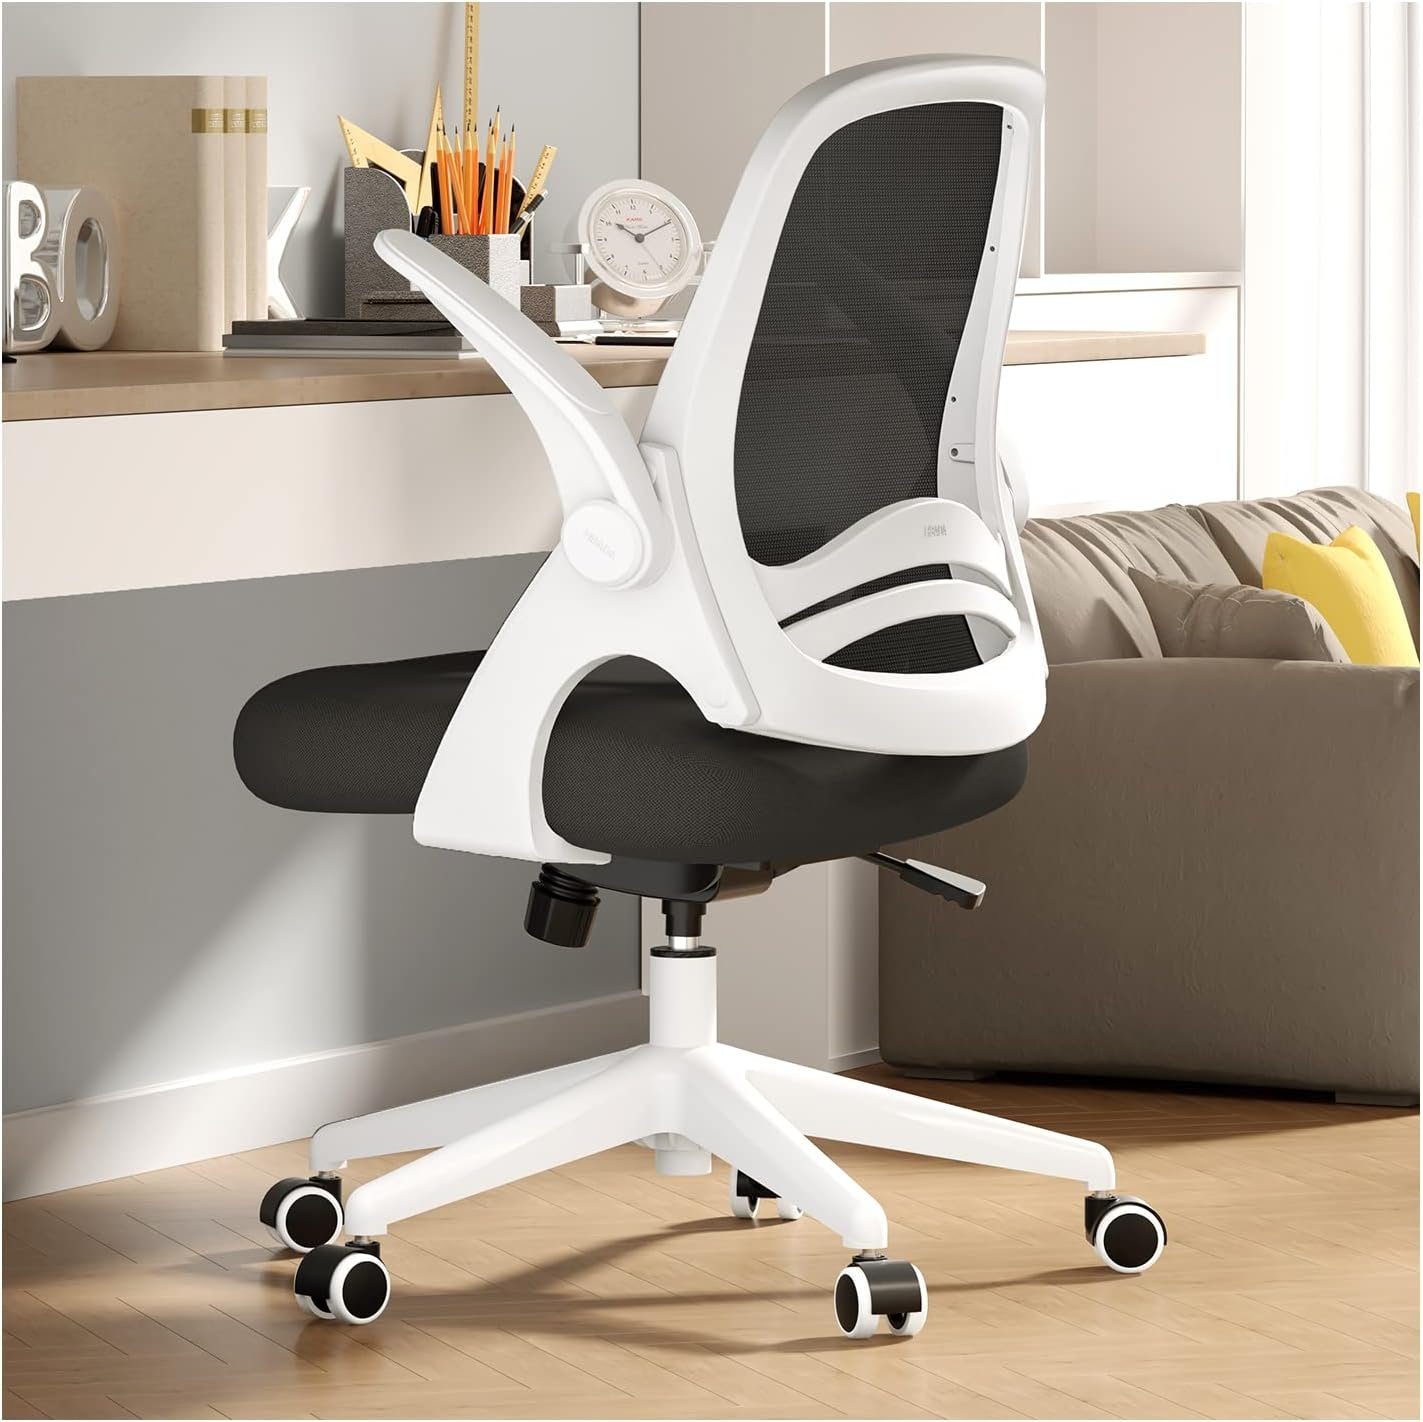 Hbada Bürostuhl (Bürostuhl ergonomisch: Schreibtischstuhl mit verstellbarem Sitz), Bürostuhl Ergonomischer Schreibtischstuhl Drehstuhl